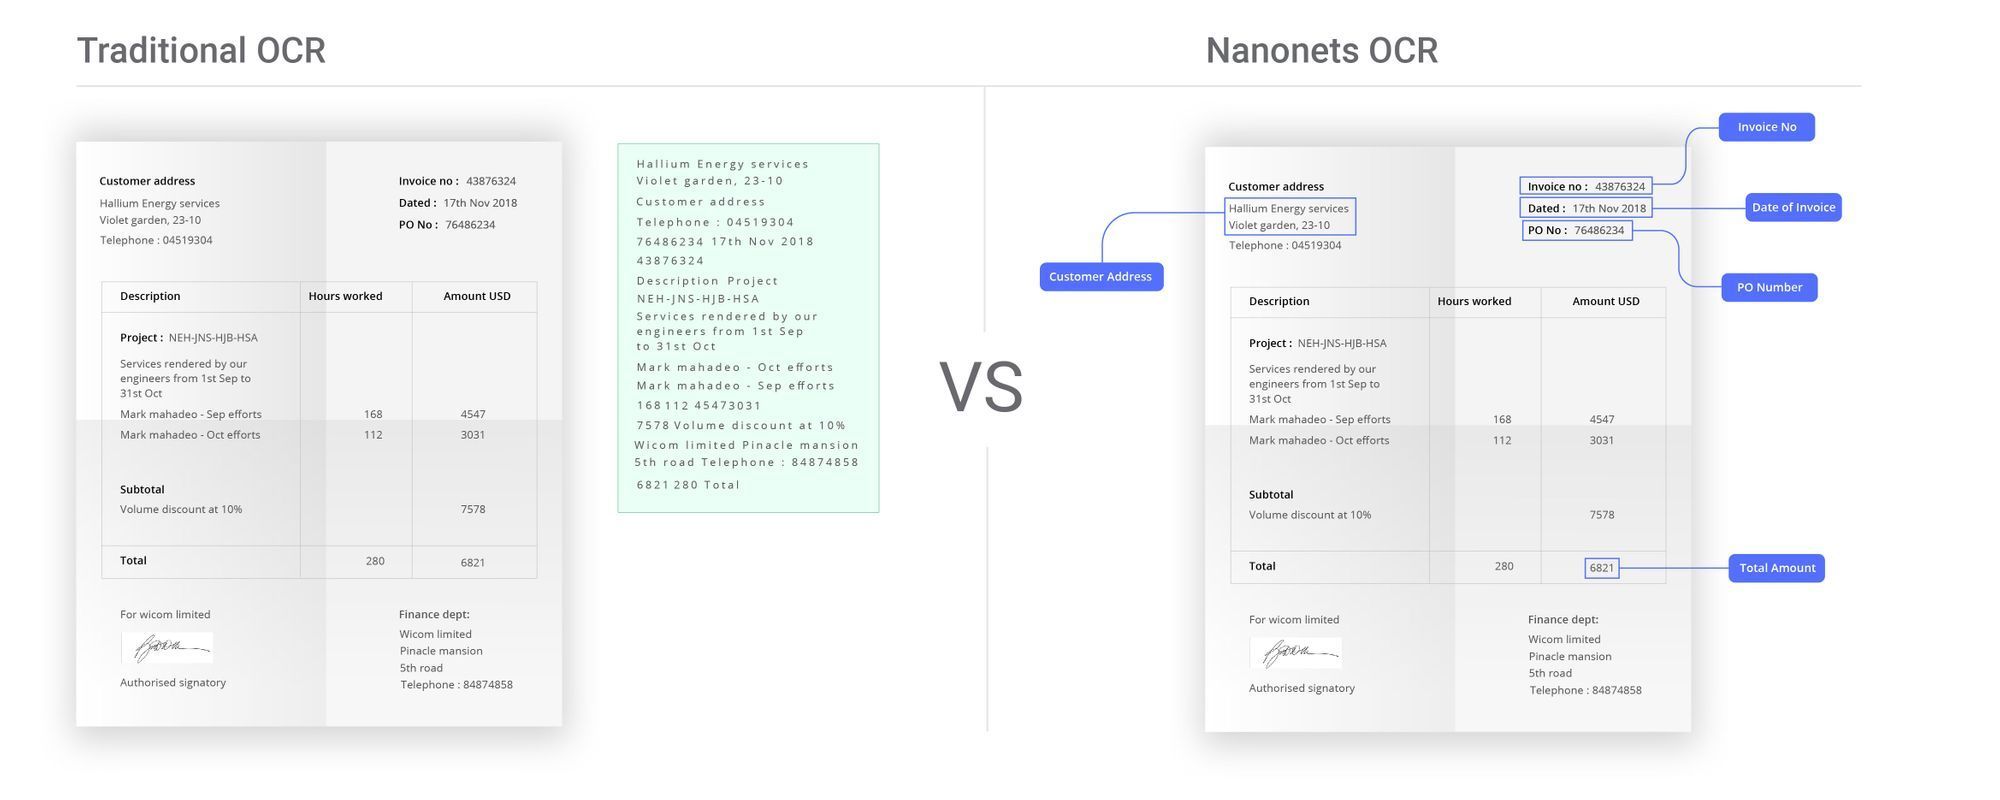 Imagem ilustrando as vantagens do Nanonets OCR para automação de entrada de pedidos em comparação com ferramentas tradicionais de OCR